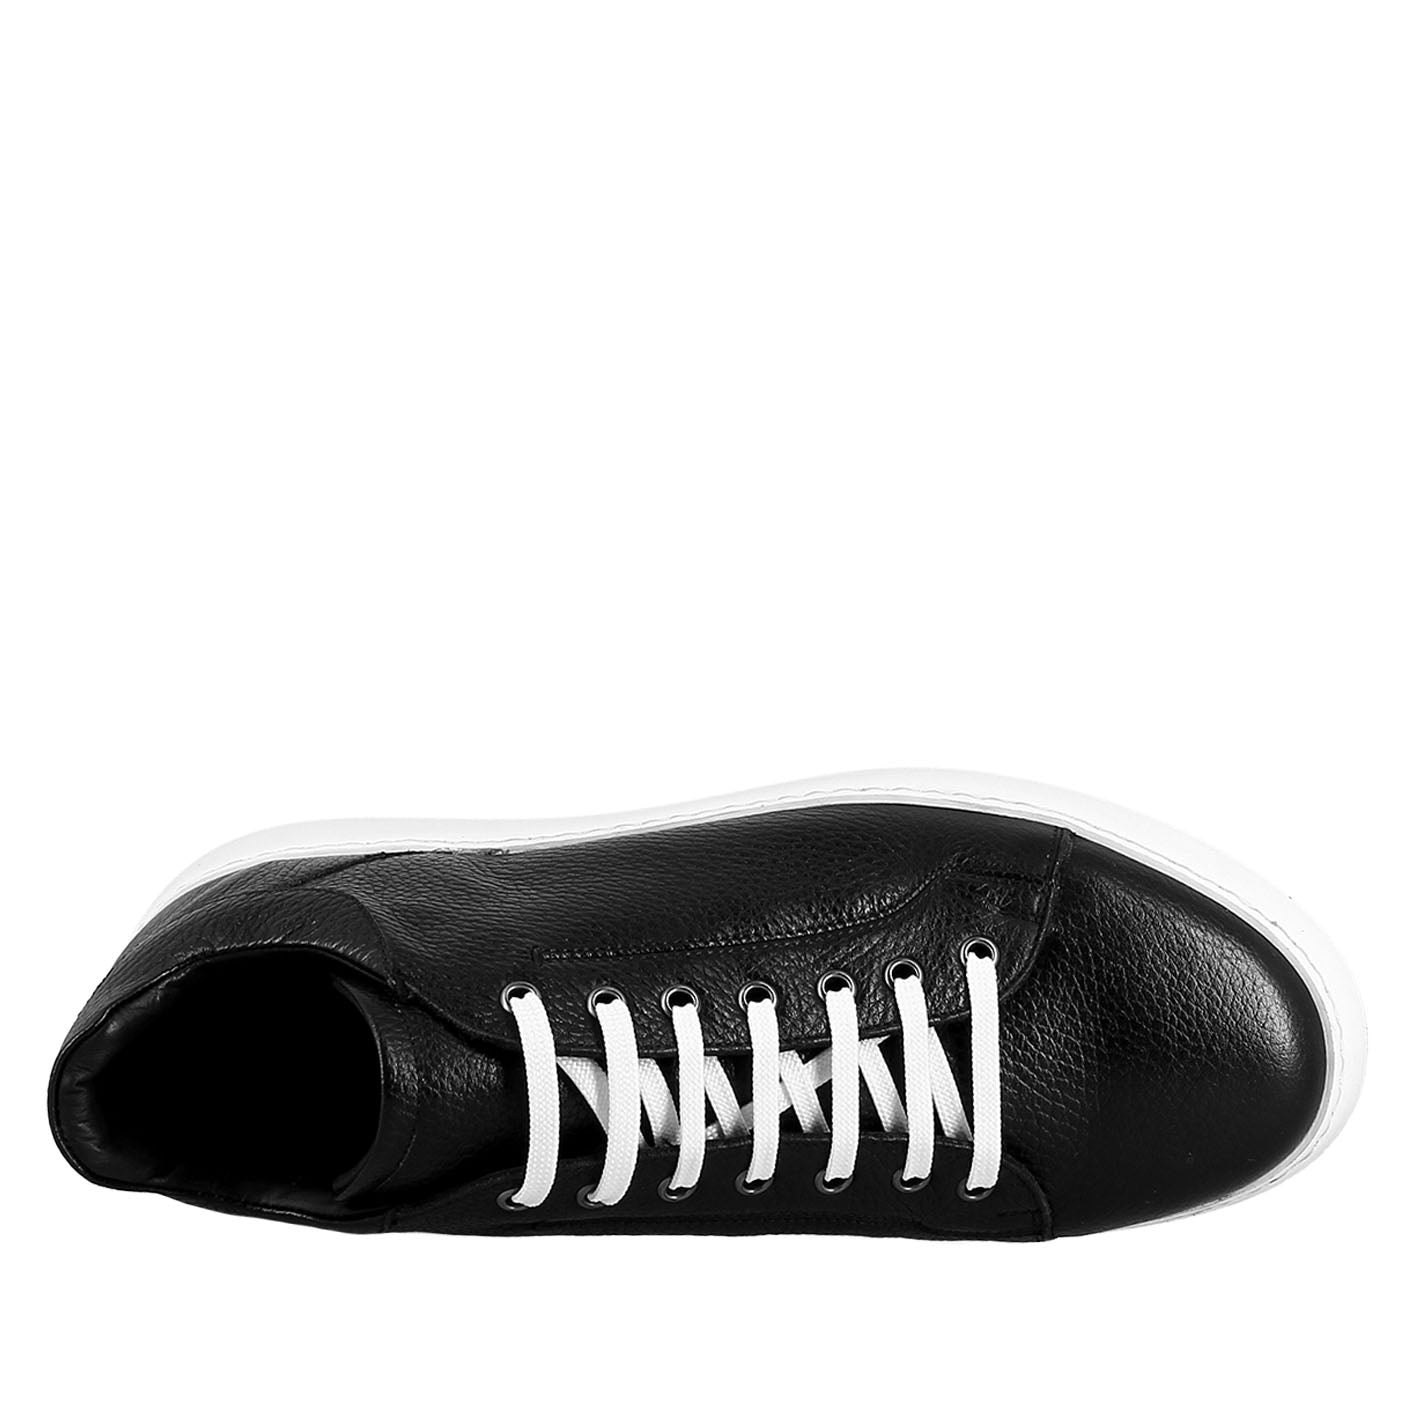 Sneaker colore nero elegante da uomo in pelle liscia